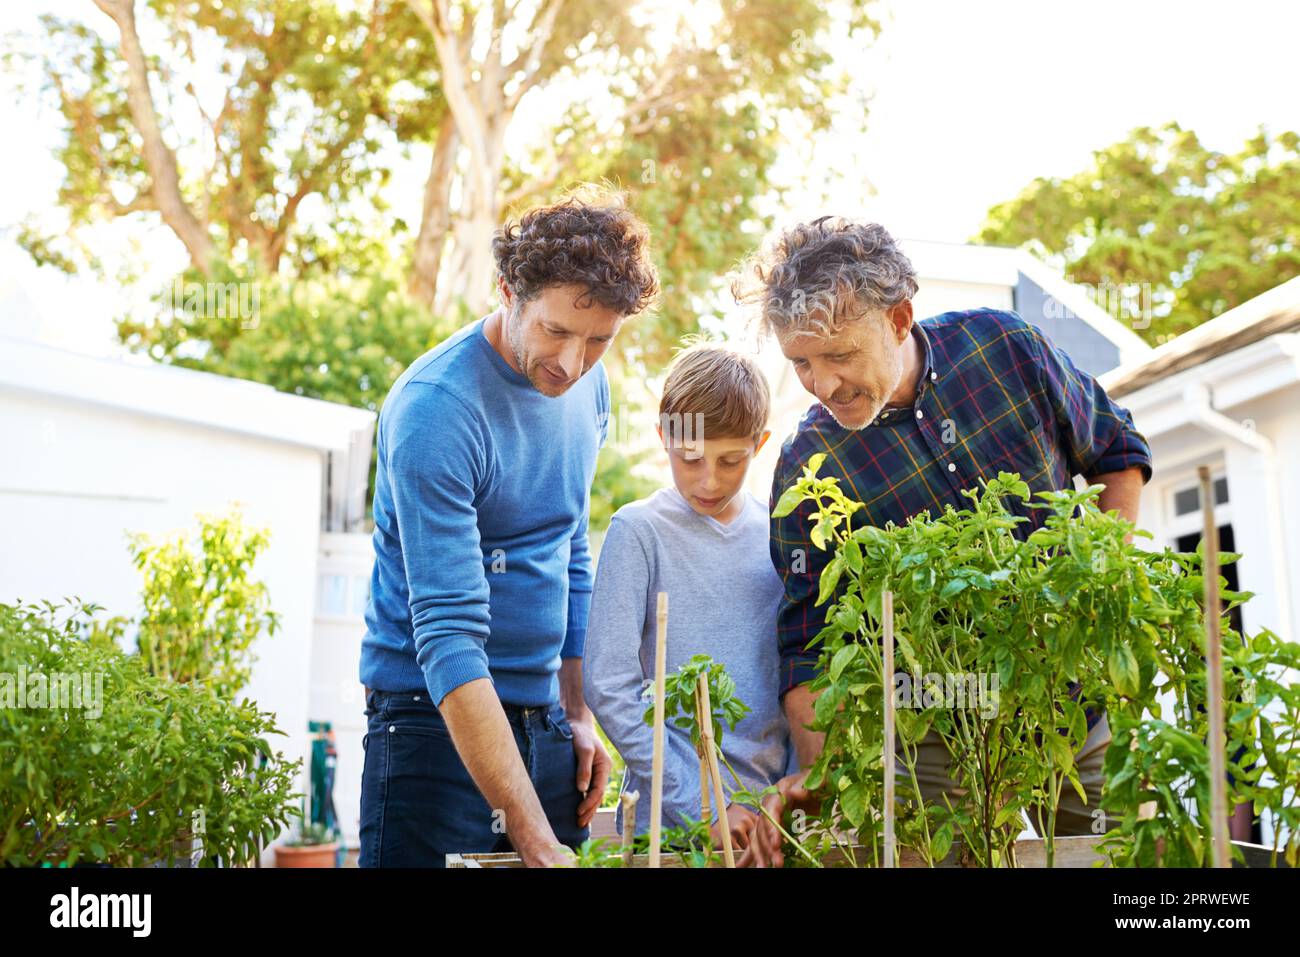 Gli uomini della famiglia amano il giardinaggio. Un giovane ragazzo che fa giardinaggio con suo padre e suo nonno. Foto Stock